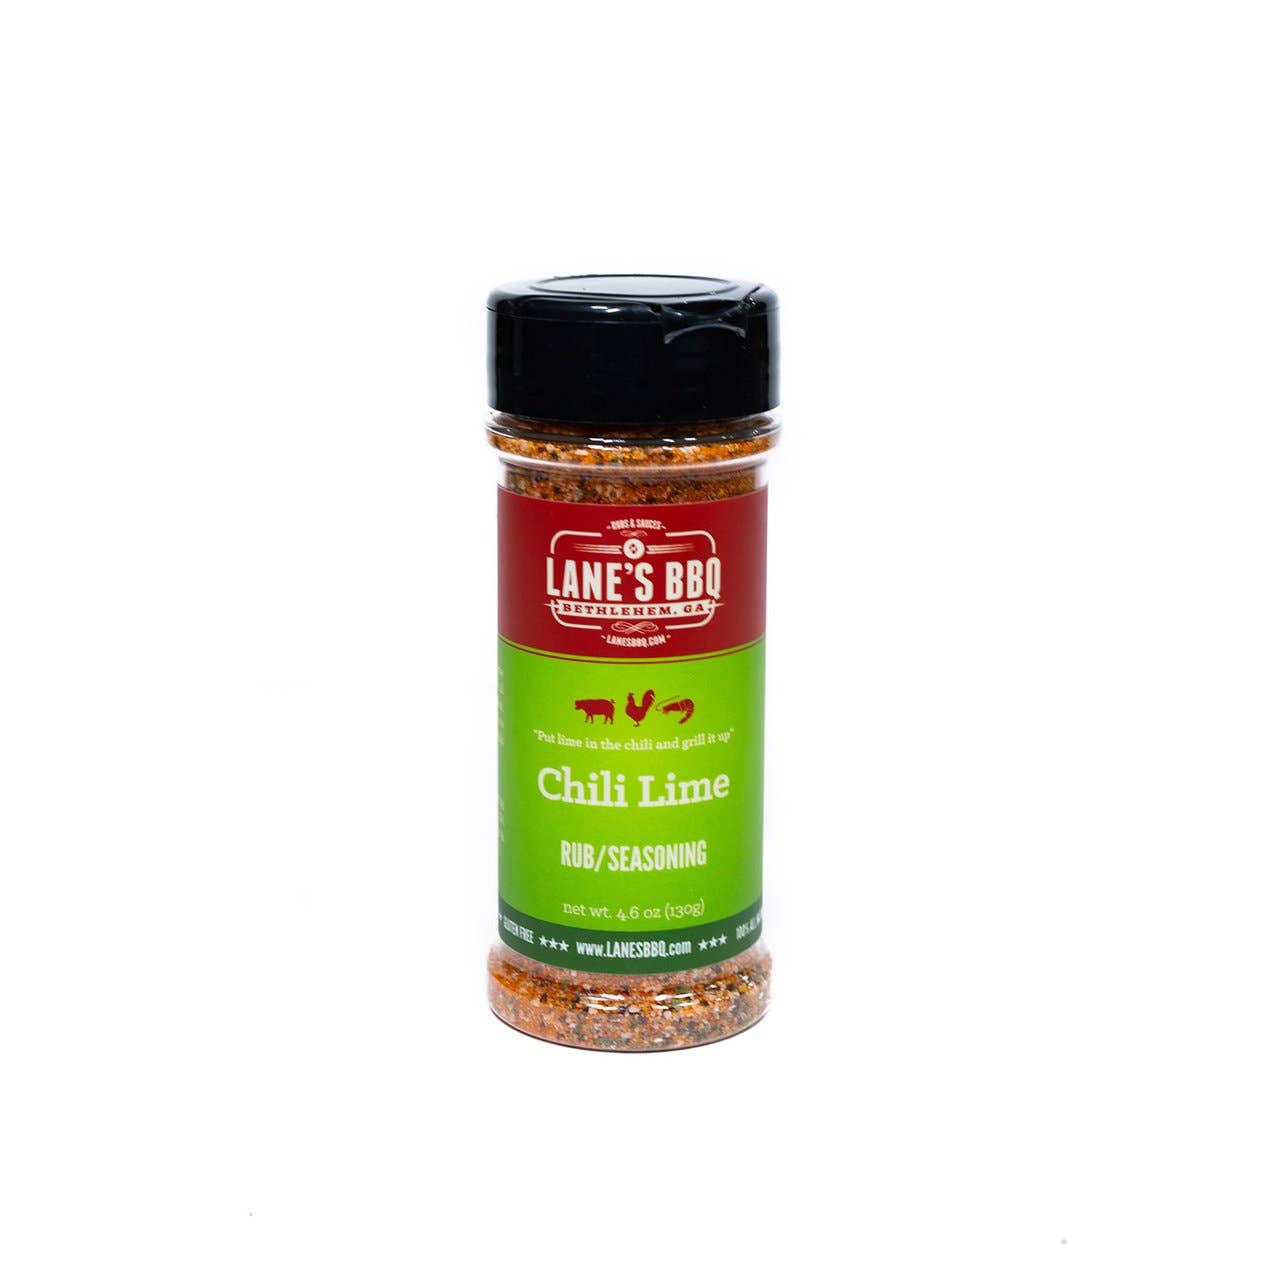 Lane's BBQ - Chili Lime Rub